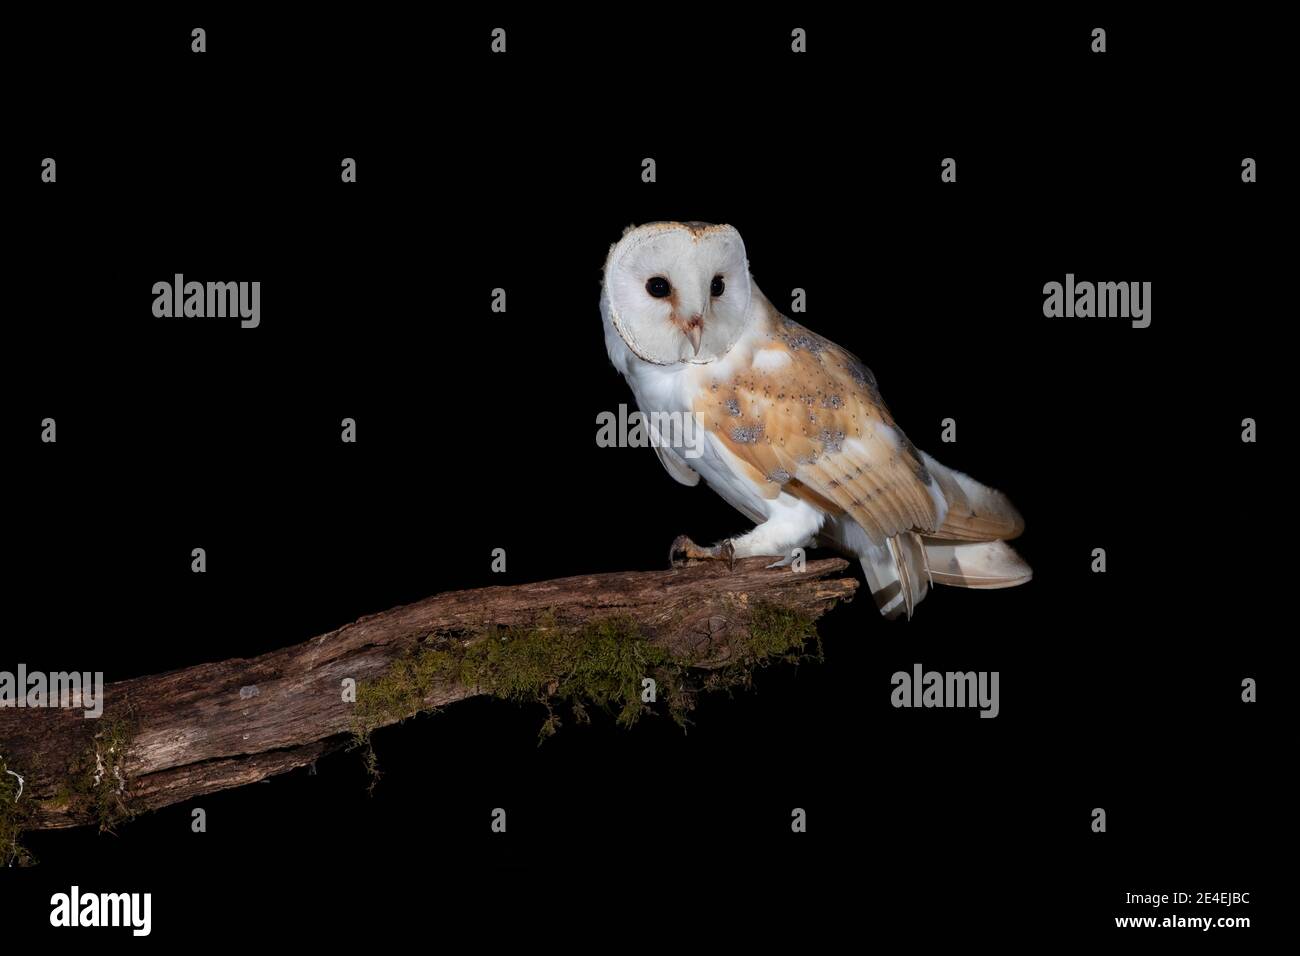 Barn Owl @ night Stock Photo